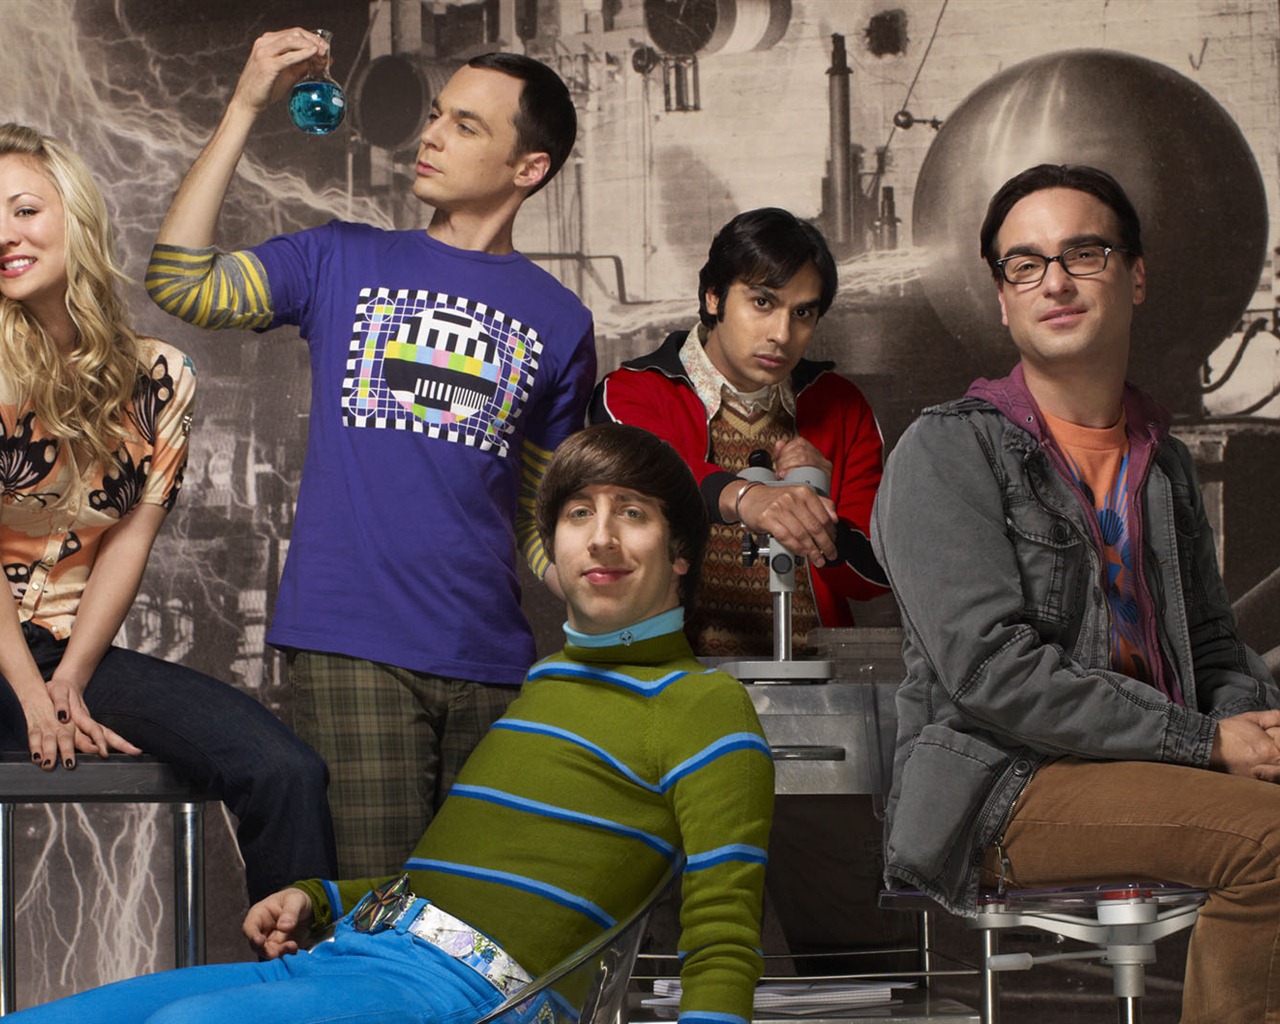 The Big Bang Theory 生活大爆炸 电视剧高清壁纸22 - 1280x1024